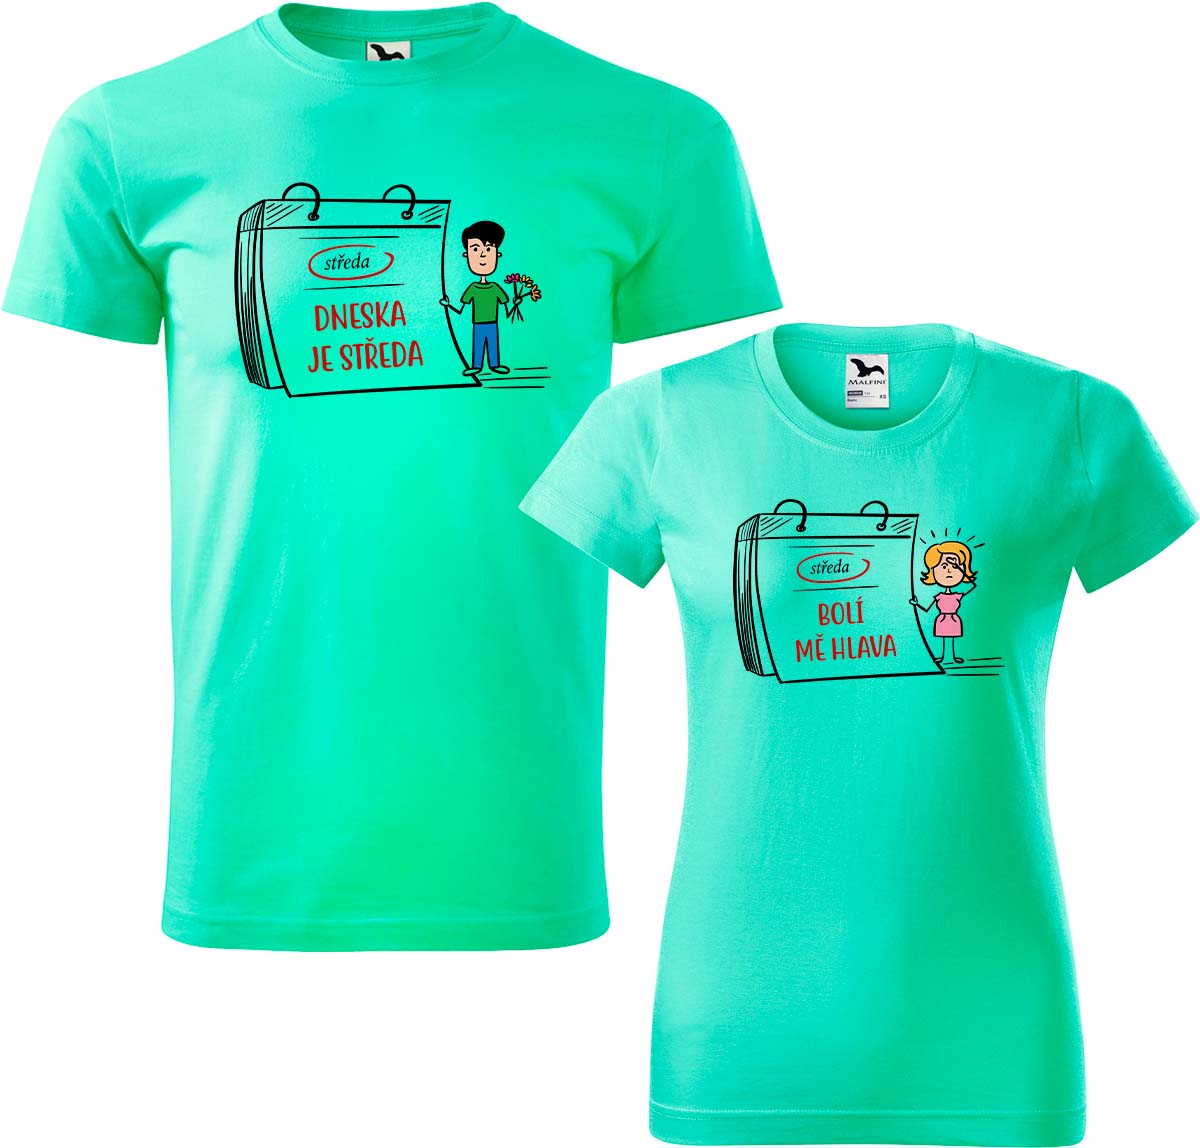 Trička pro páry - Dneska je středa Barva: Mátová (95), Velikost dámské tričko: S, Velikost pánské tričko: XL